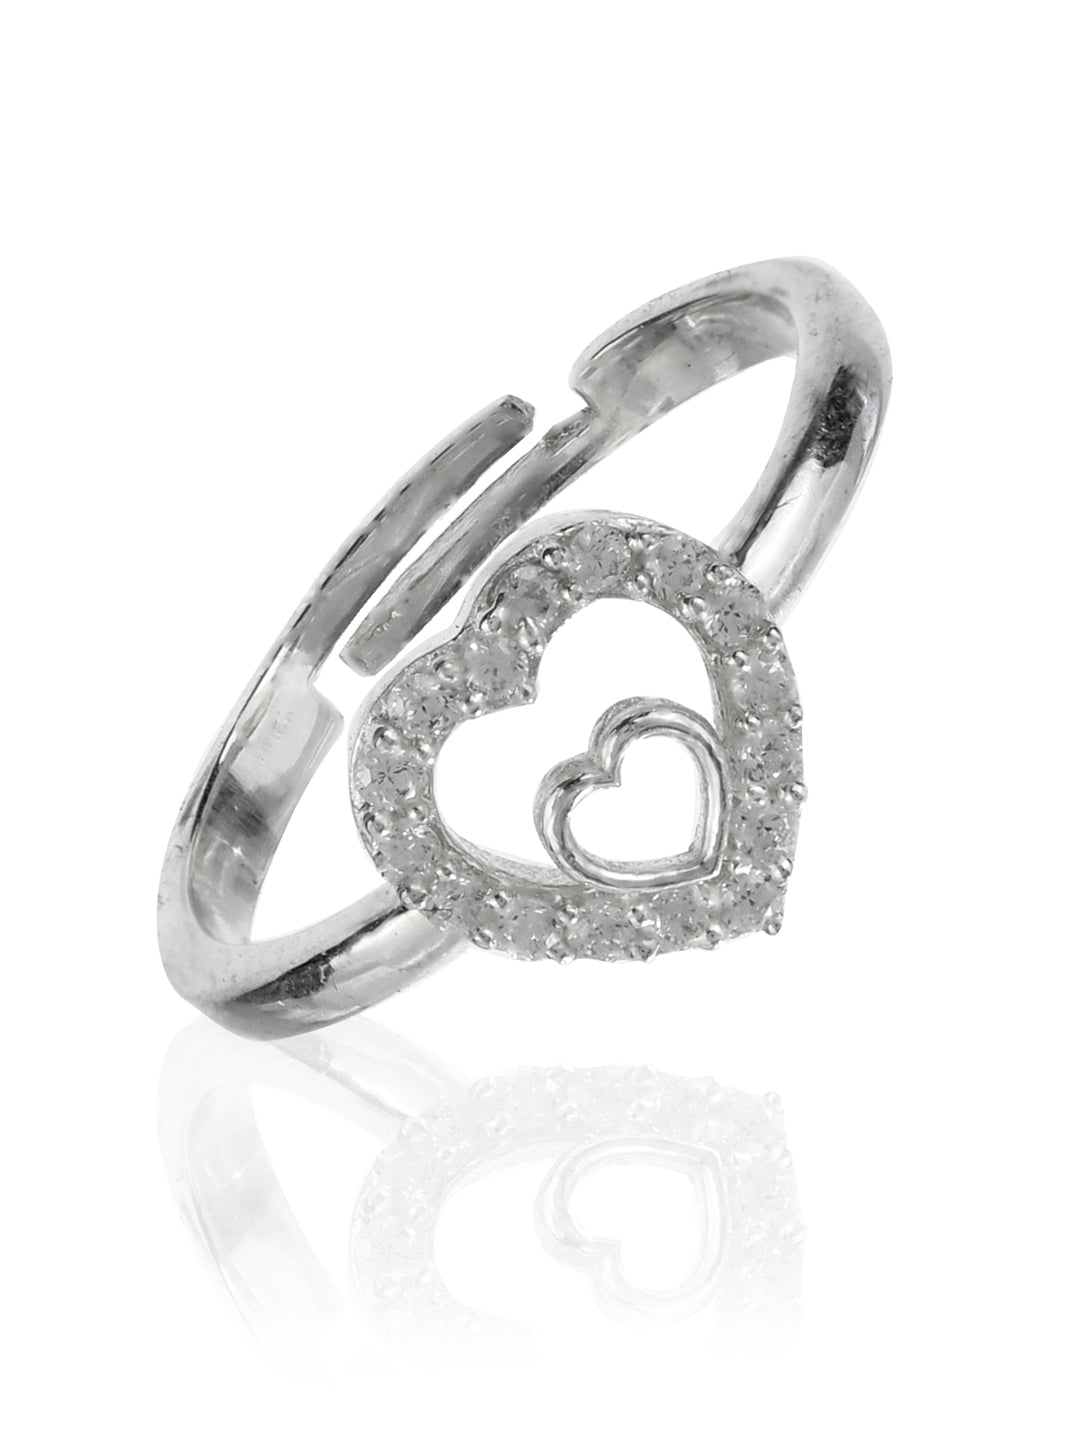 Heart in Heart Sterling Silver Zircon Ring